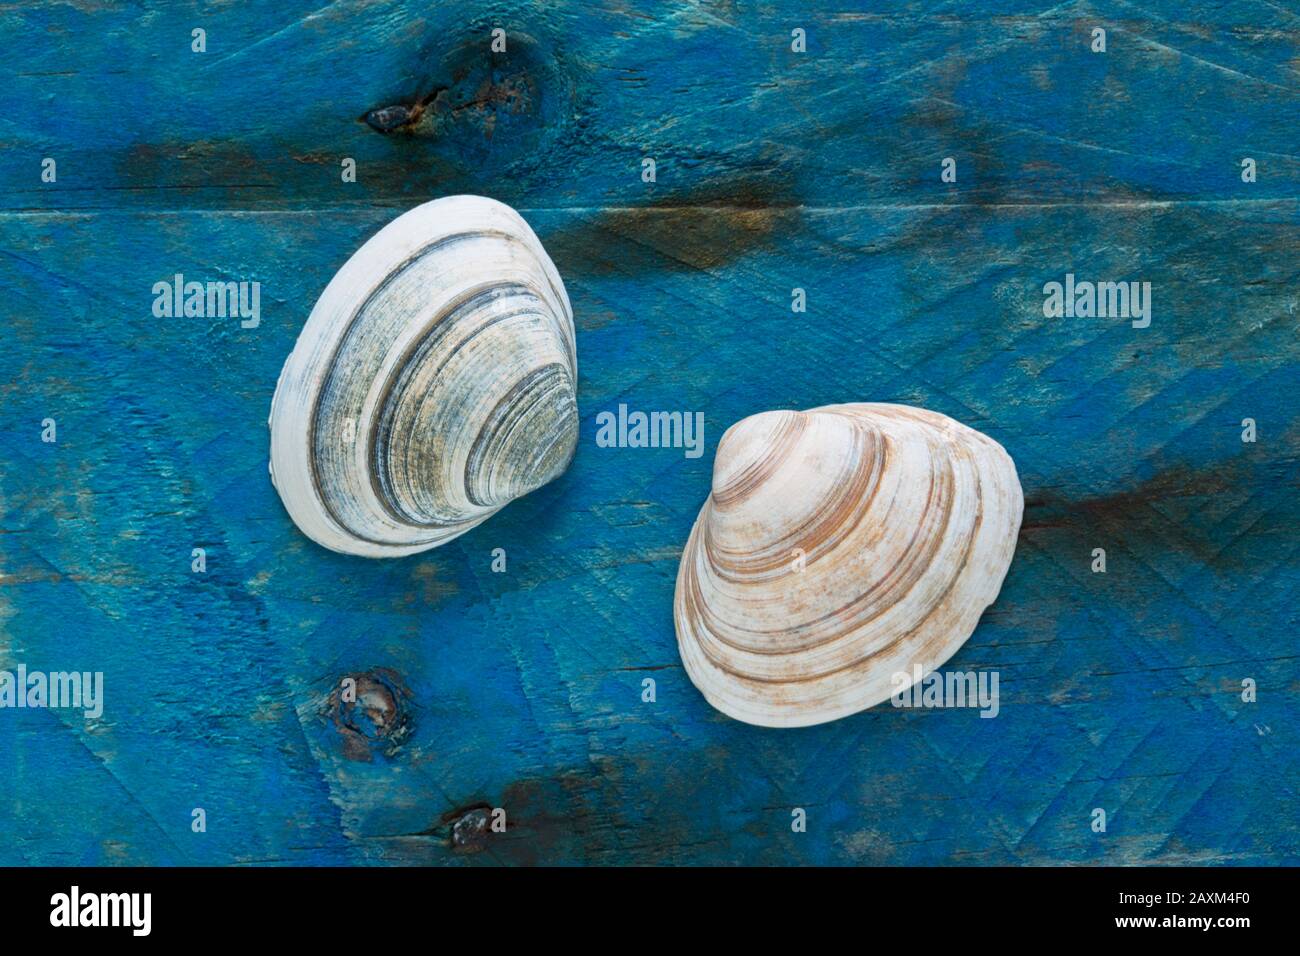 Due spesse Conchiglie Di Trogolo, Spisula solida, hanno trovato beachcombing esposto su un pezzo di driftwood dipinto di blu. Dorset Inghilterra GB Foto Stock